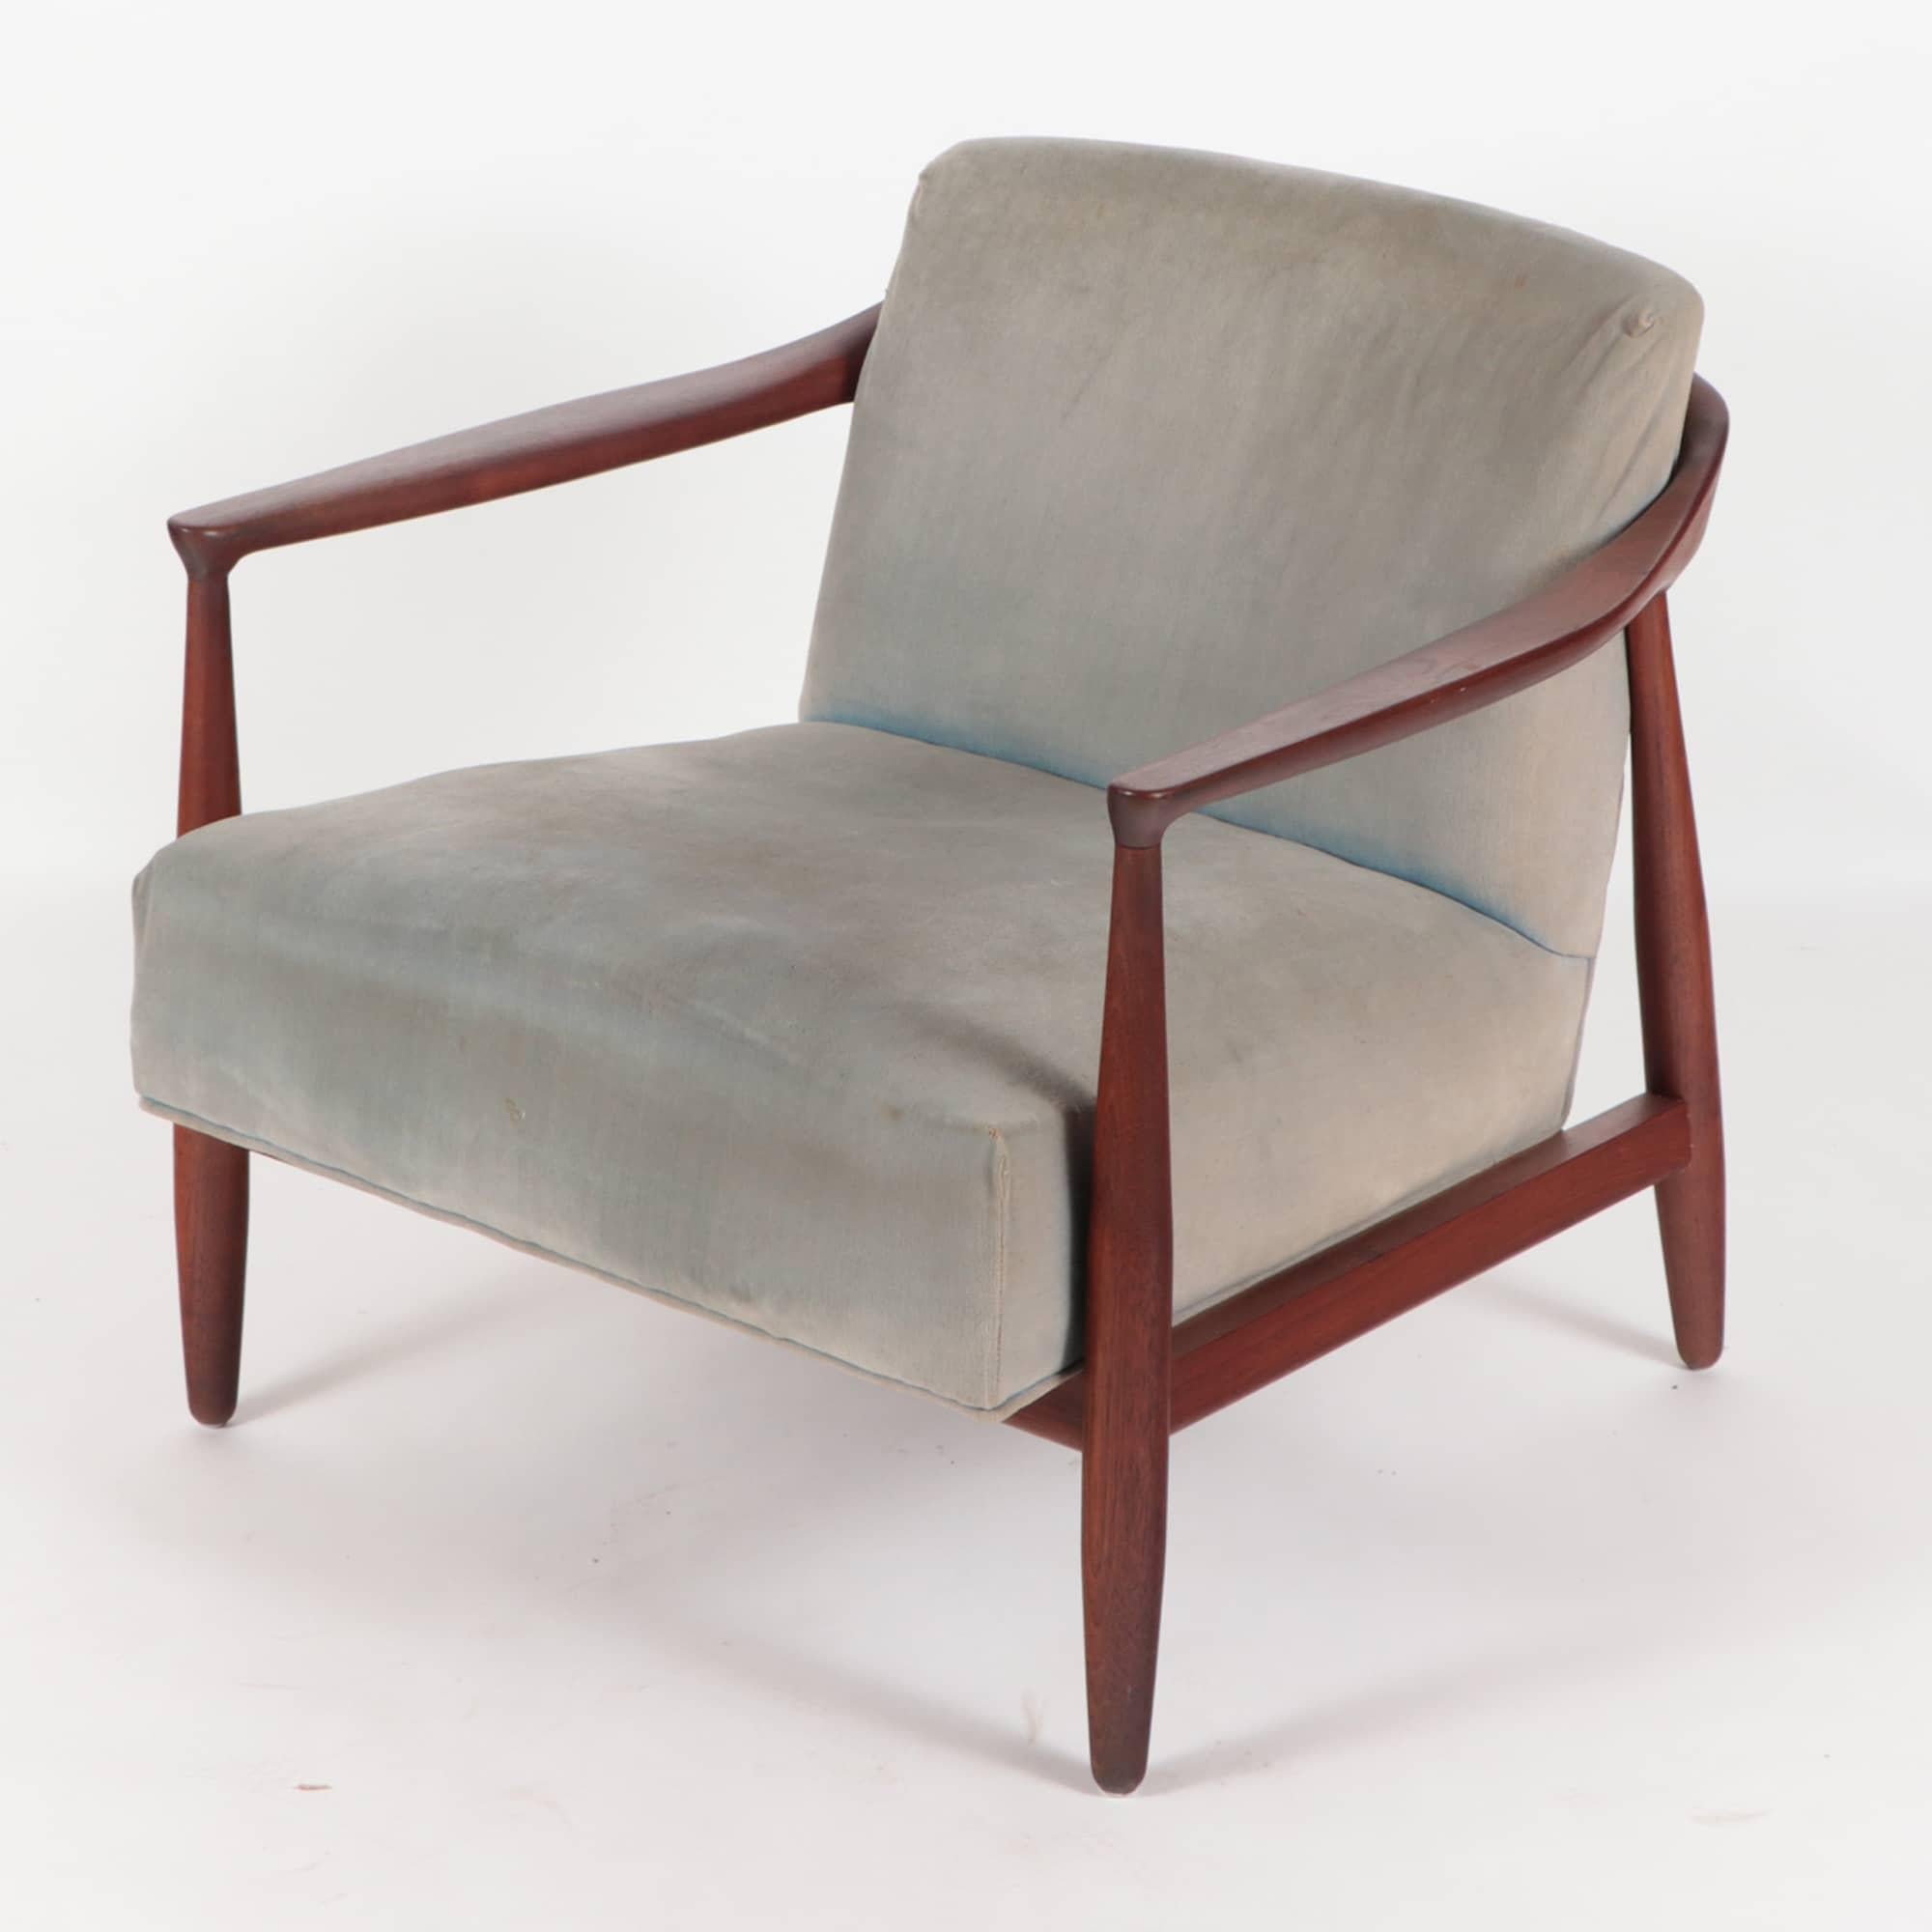 Un magnifique ensemble de deux chaises de salon aux lignes exceptionnelles, au design discret et très bien construit. Conçu par Erwin-Lambeth pour Tomlinson dans les années 1950. Cadre en acajou.